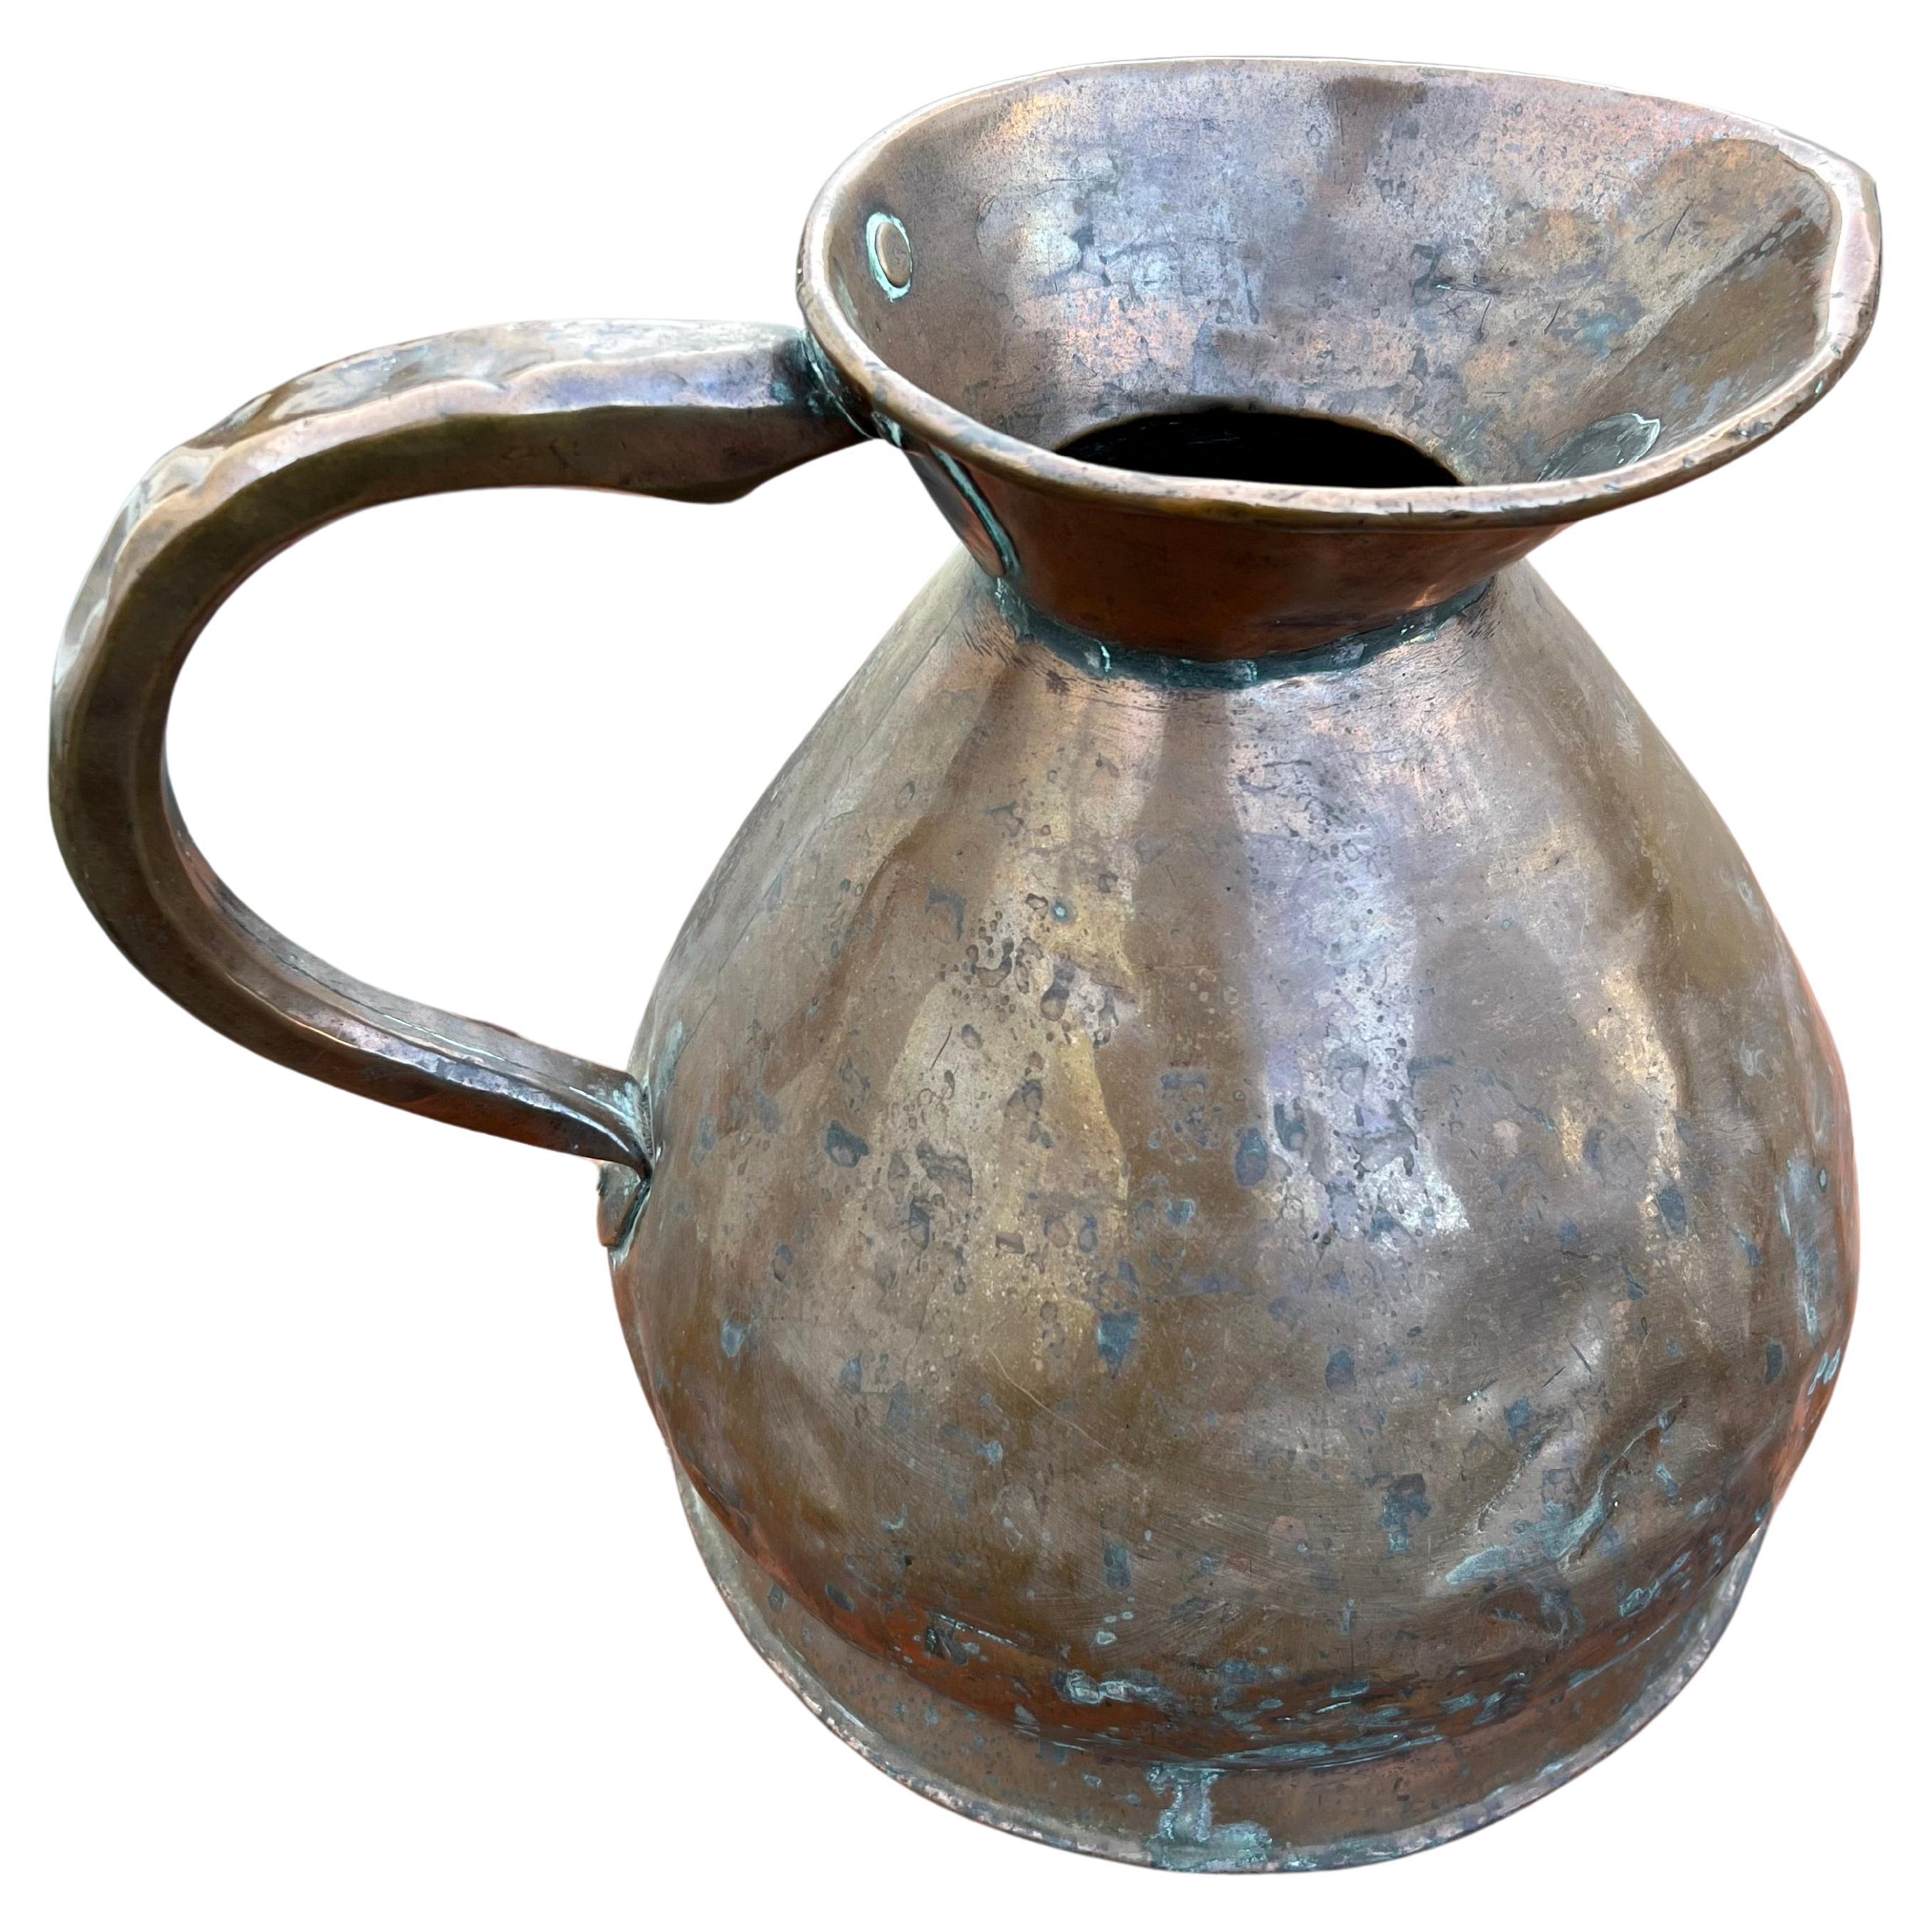 Pichet ou mesure en cuivre de 2 gallons du 19e siècle